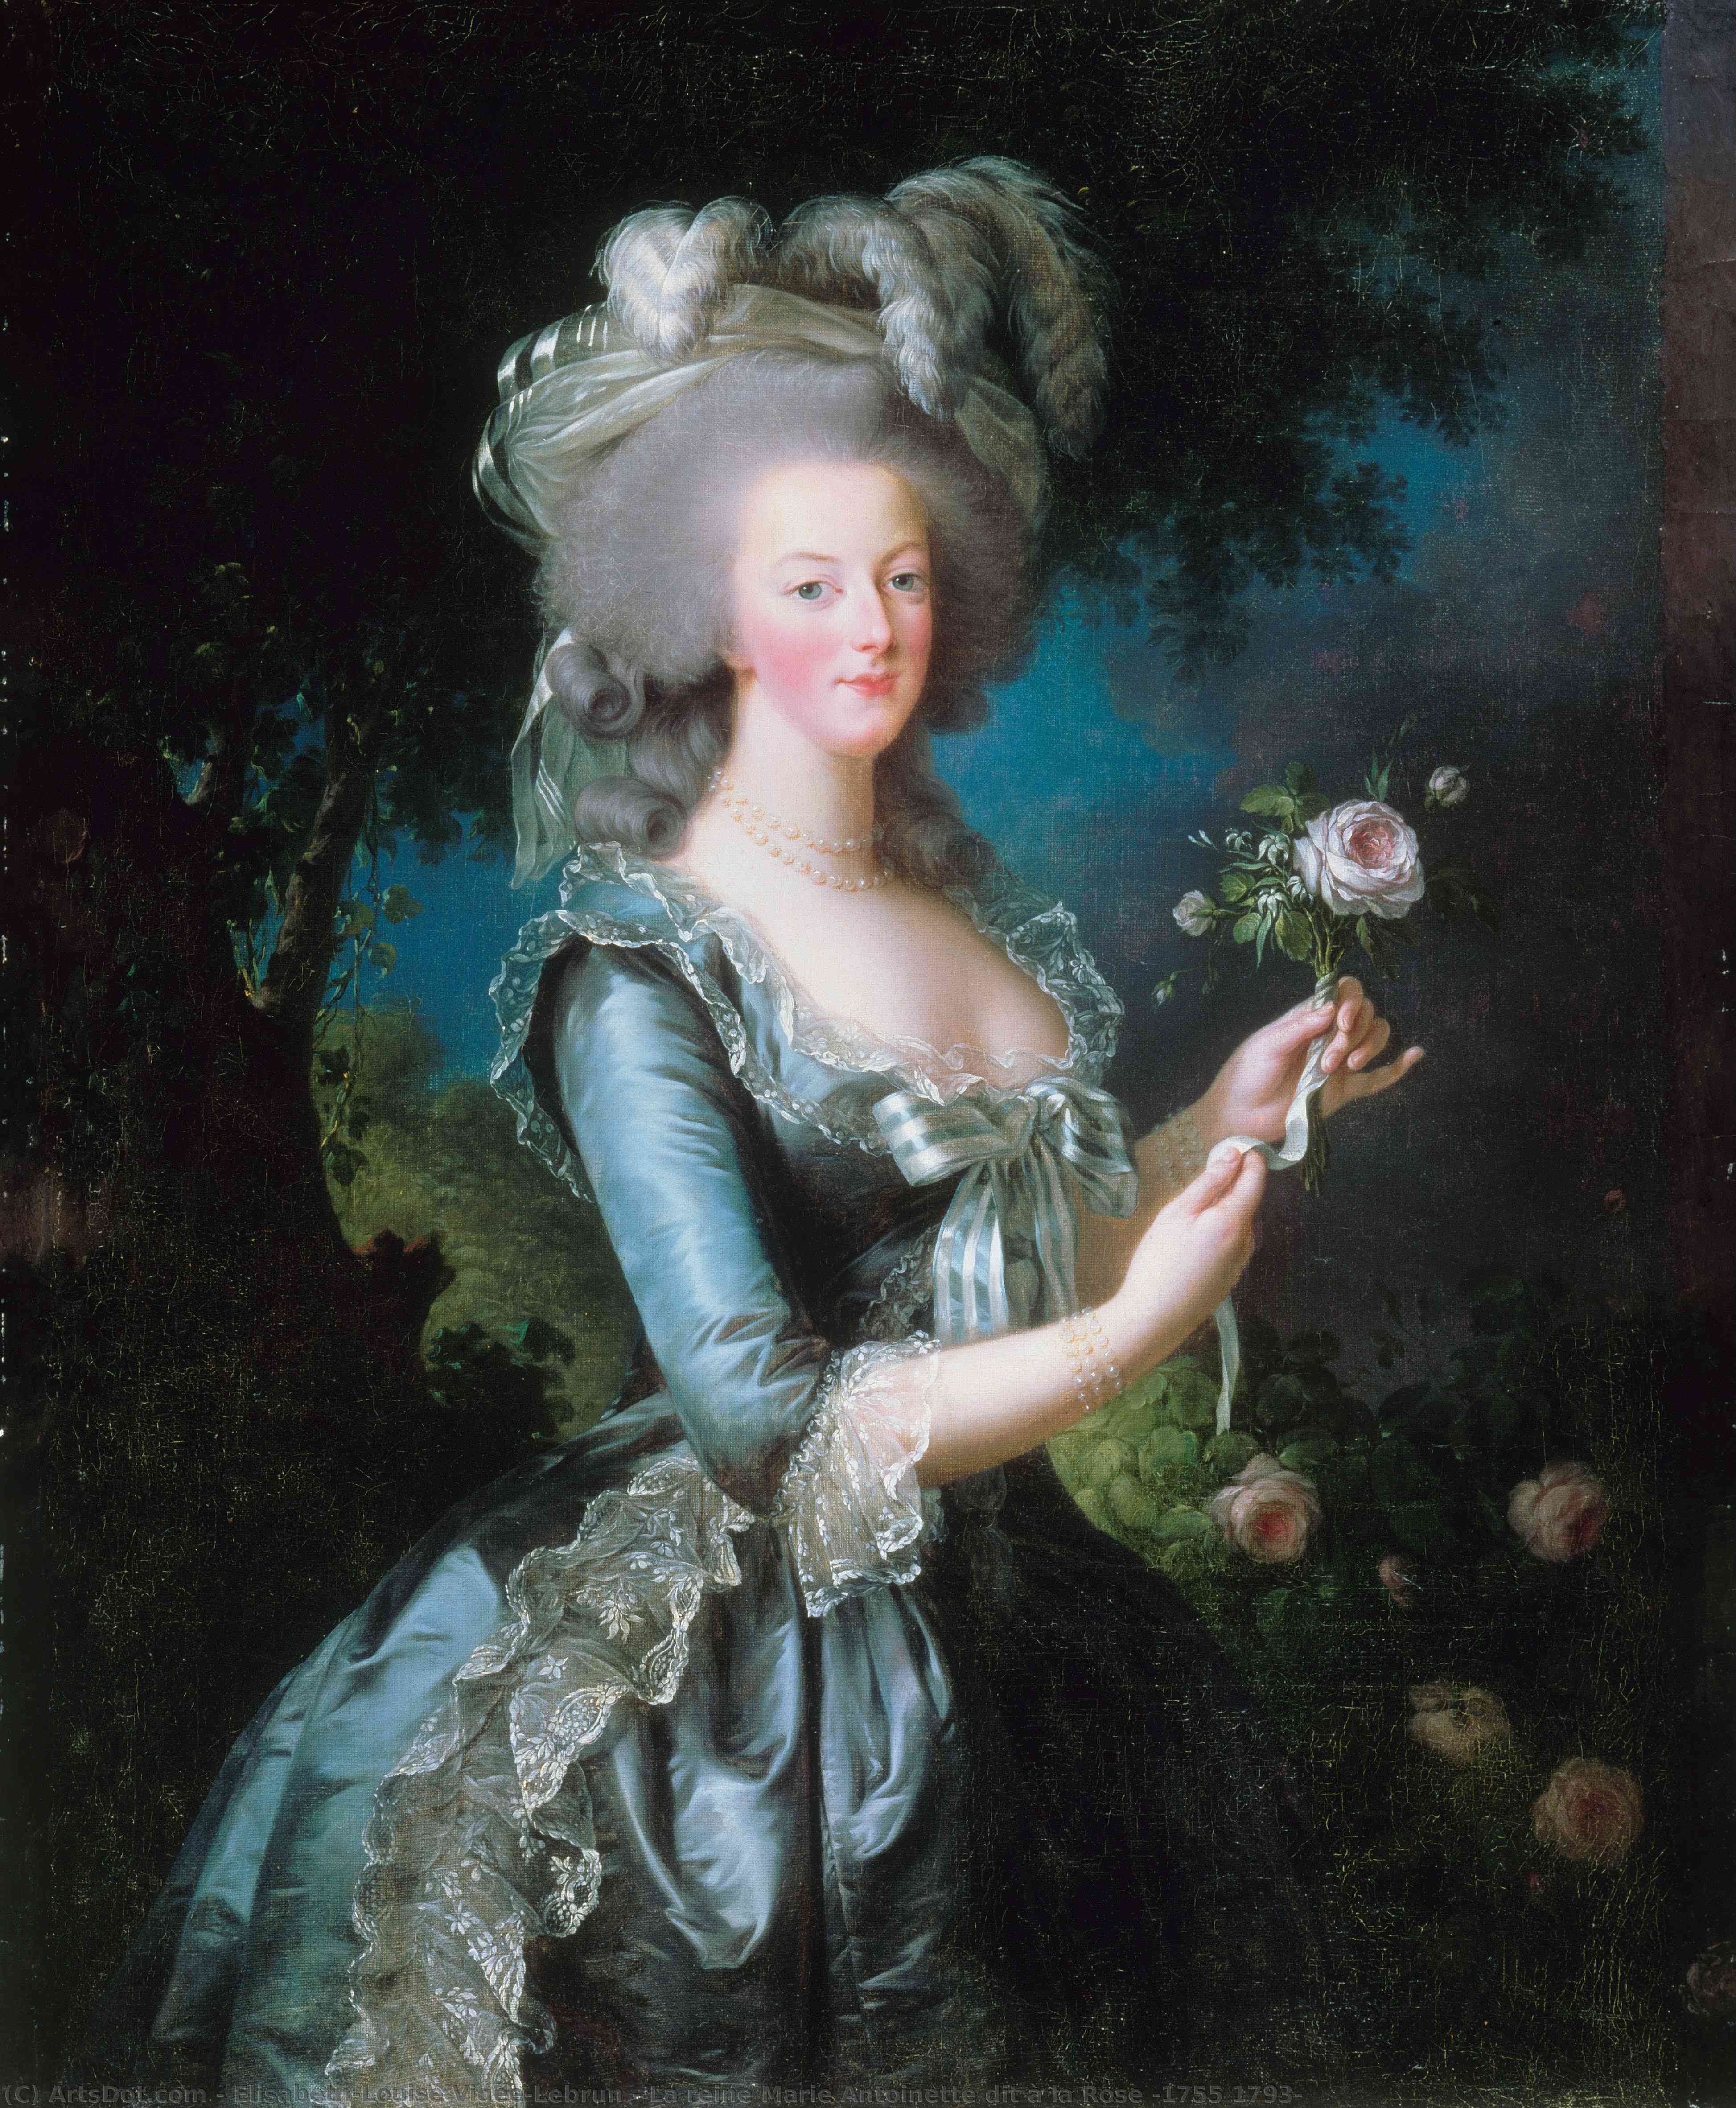 Wikioo.org - Bách khoa toàn thư về mỹ thuật - Vẽ tranh, Tác phẩm nghệ thuật Elisabeth-Louise Vigée-Lebrun - La reine Marie Antoinette dit à la Rose (1755 1793)